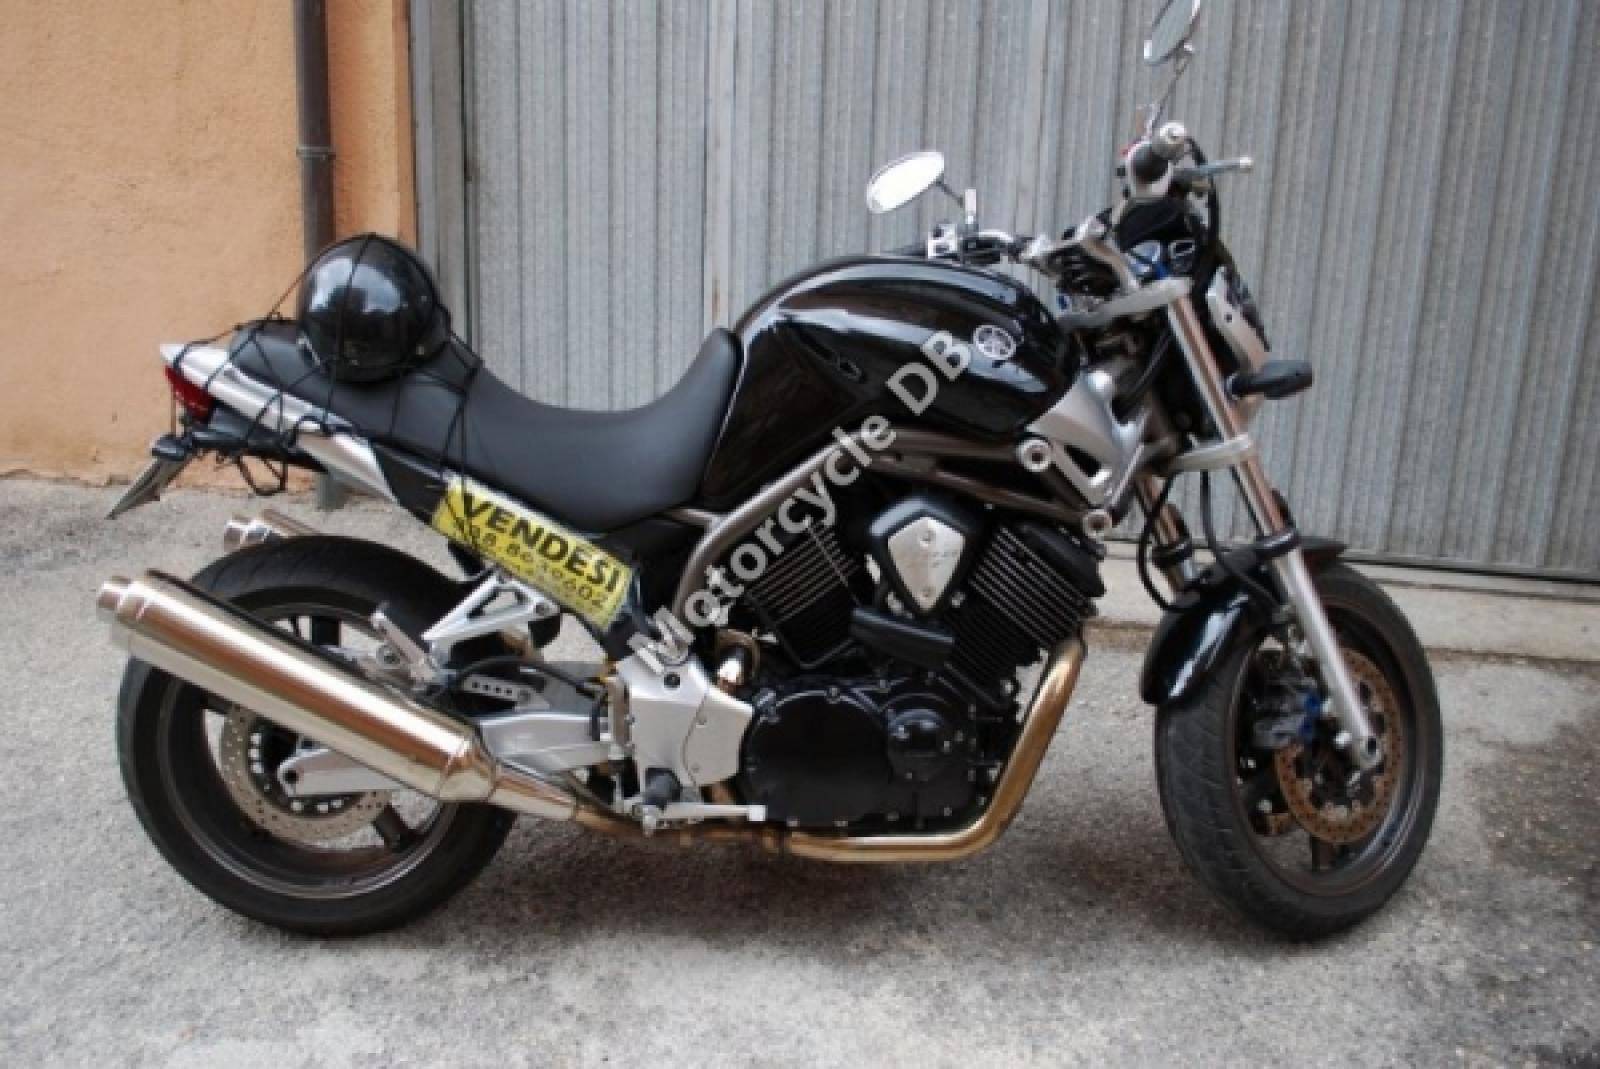 Мотоцикл bt 1100 bulldog: технические характеристики, фото, видео